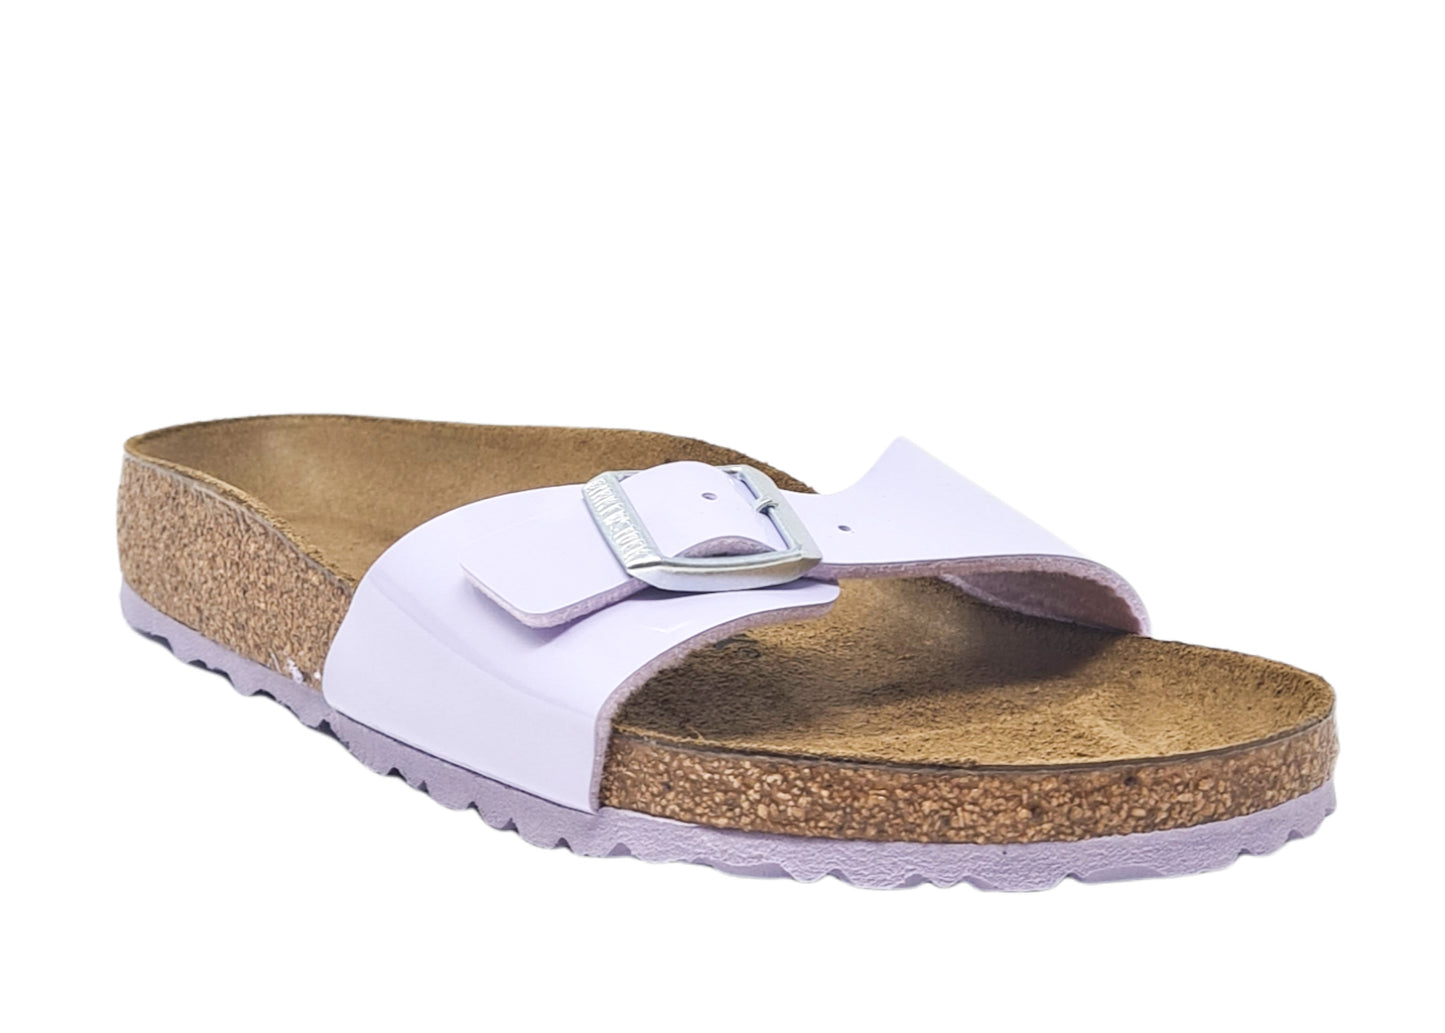 Anatomical slipper for women 1021389